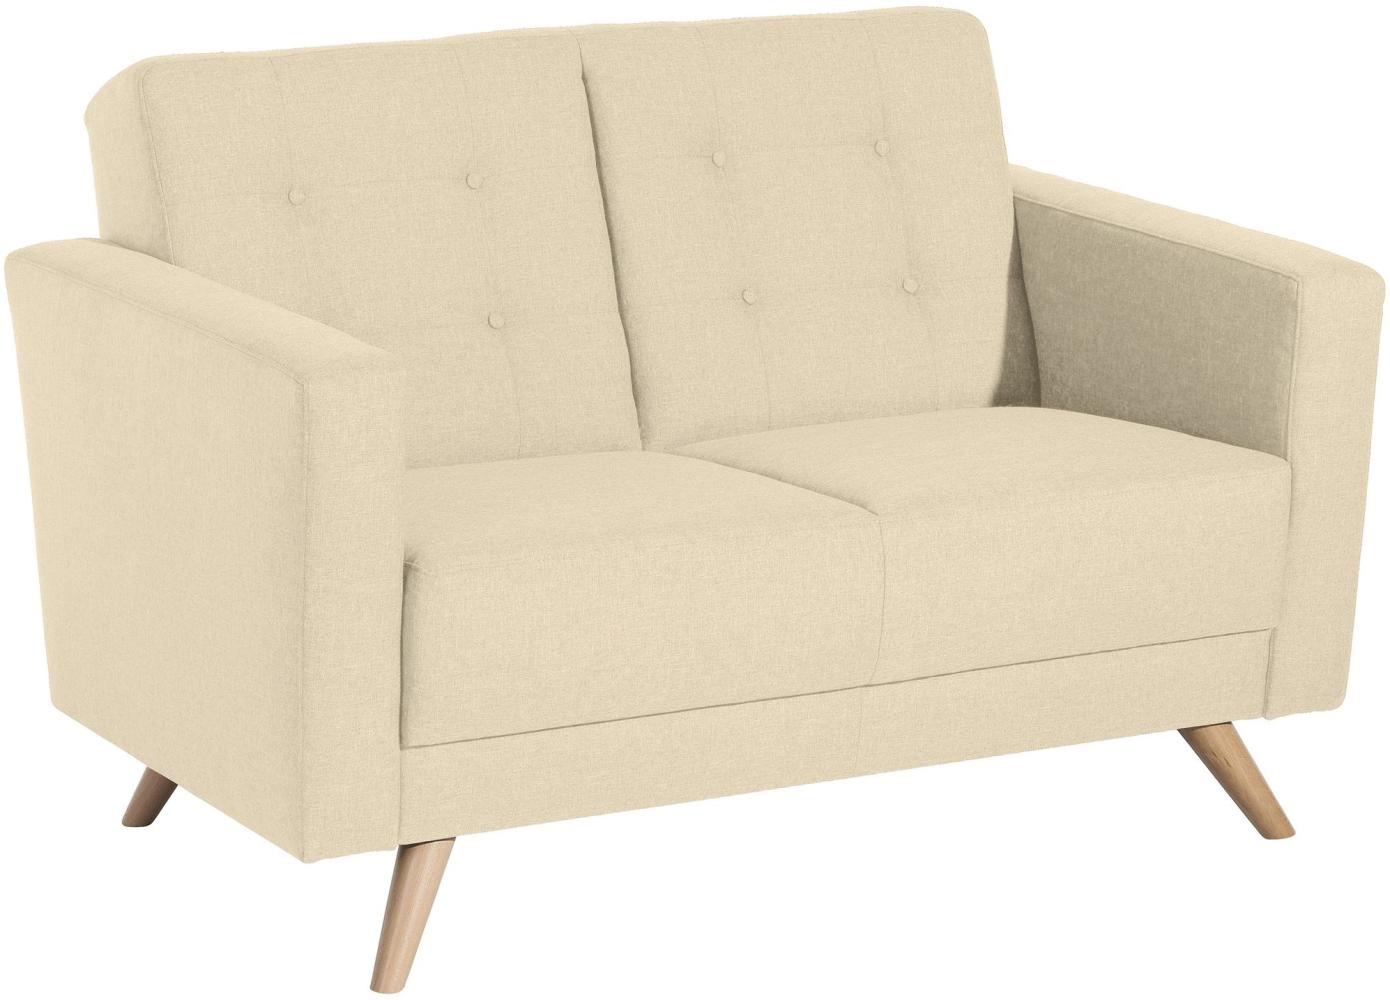 Sofa 2-Sitzer Karisa Bezug Flachgewebe Buche natur / beige 21913 Bild 1